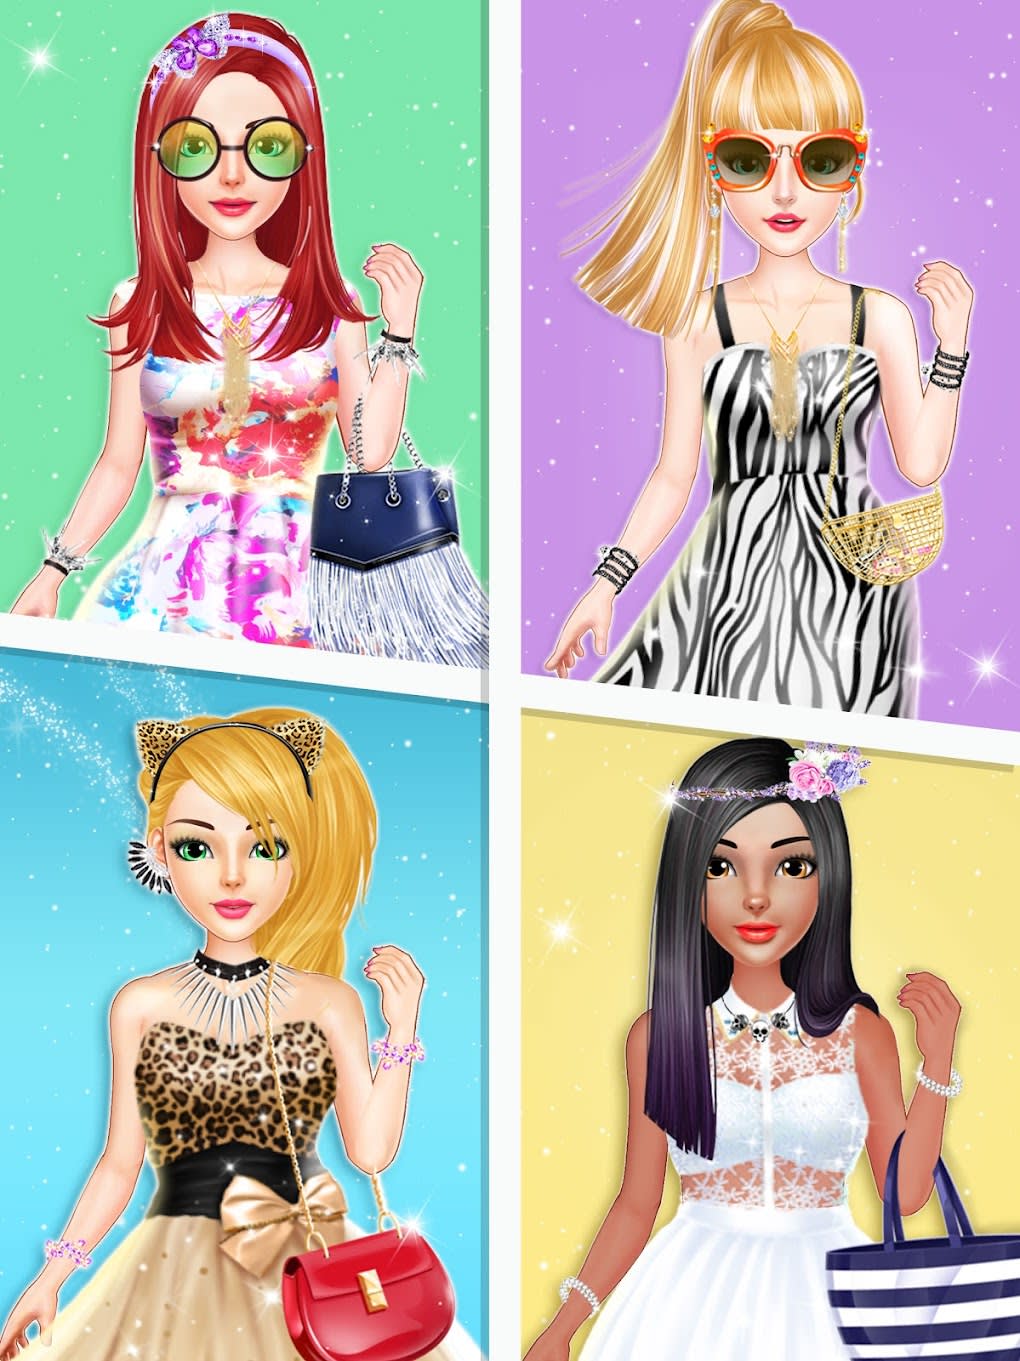 star fashion model - spa para meninas e jogos de vestir::Appstore  for Android